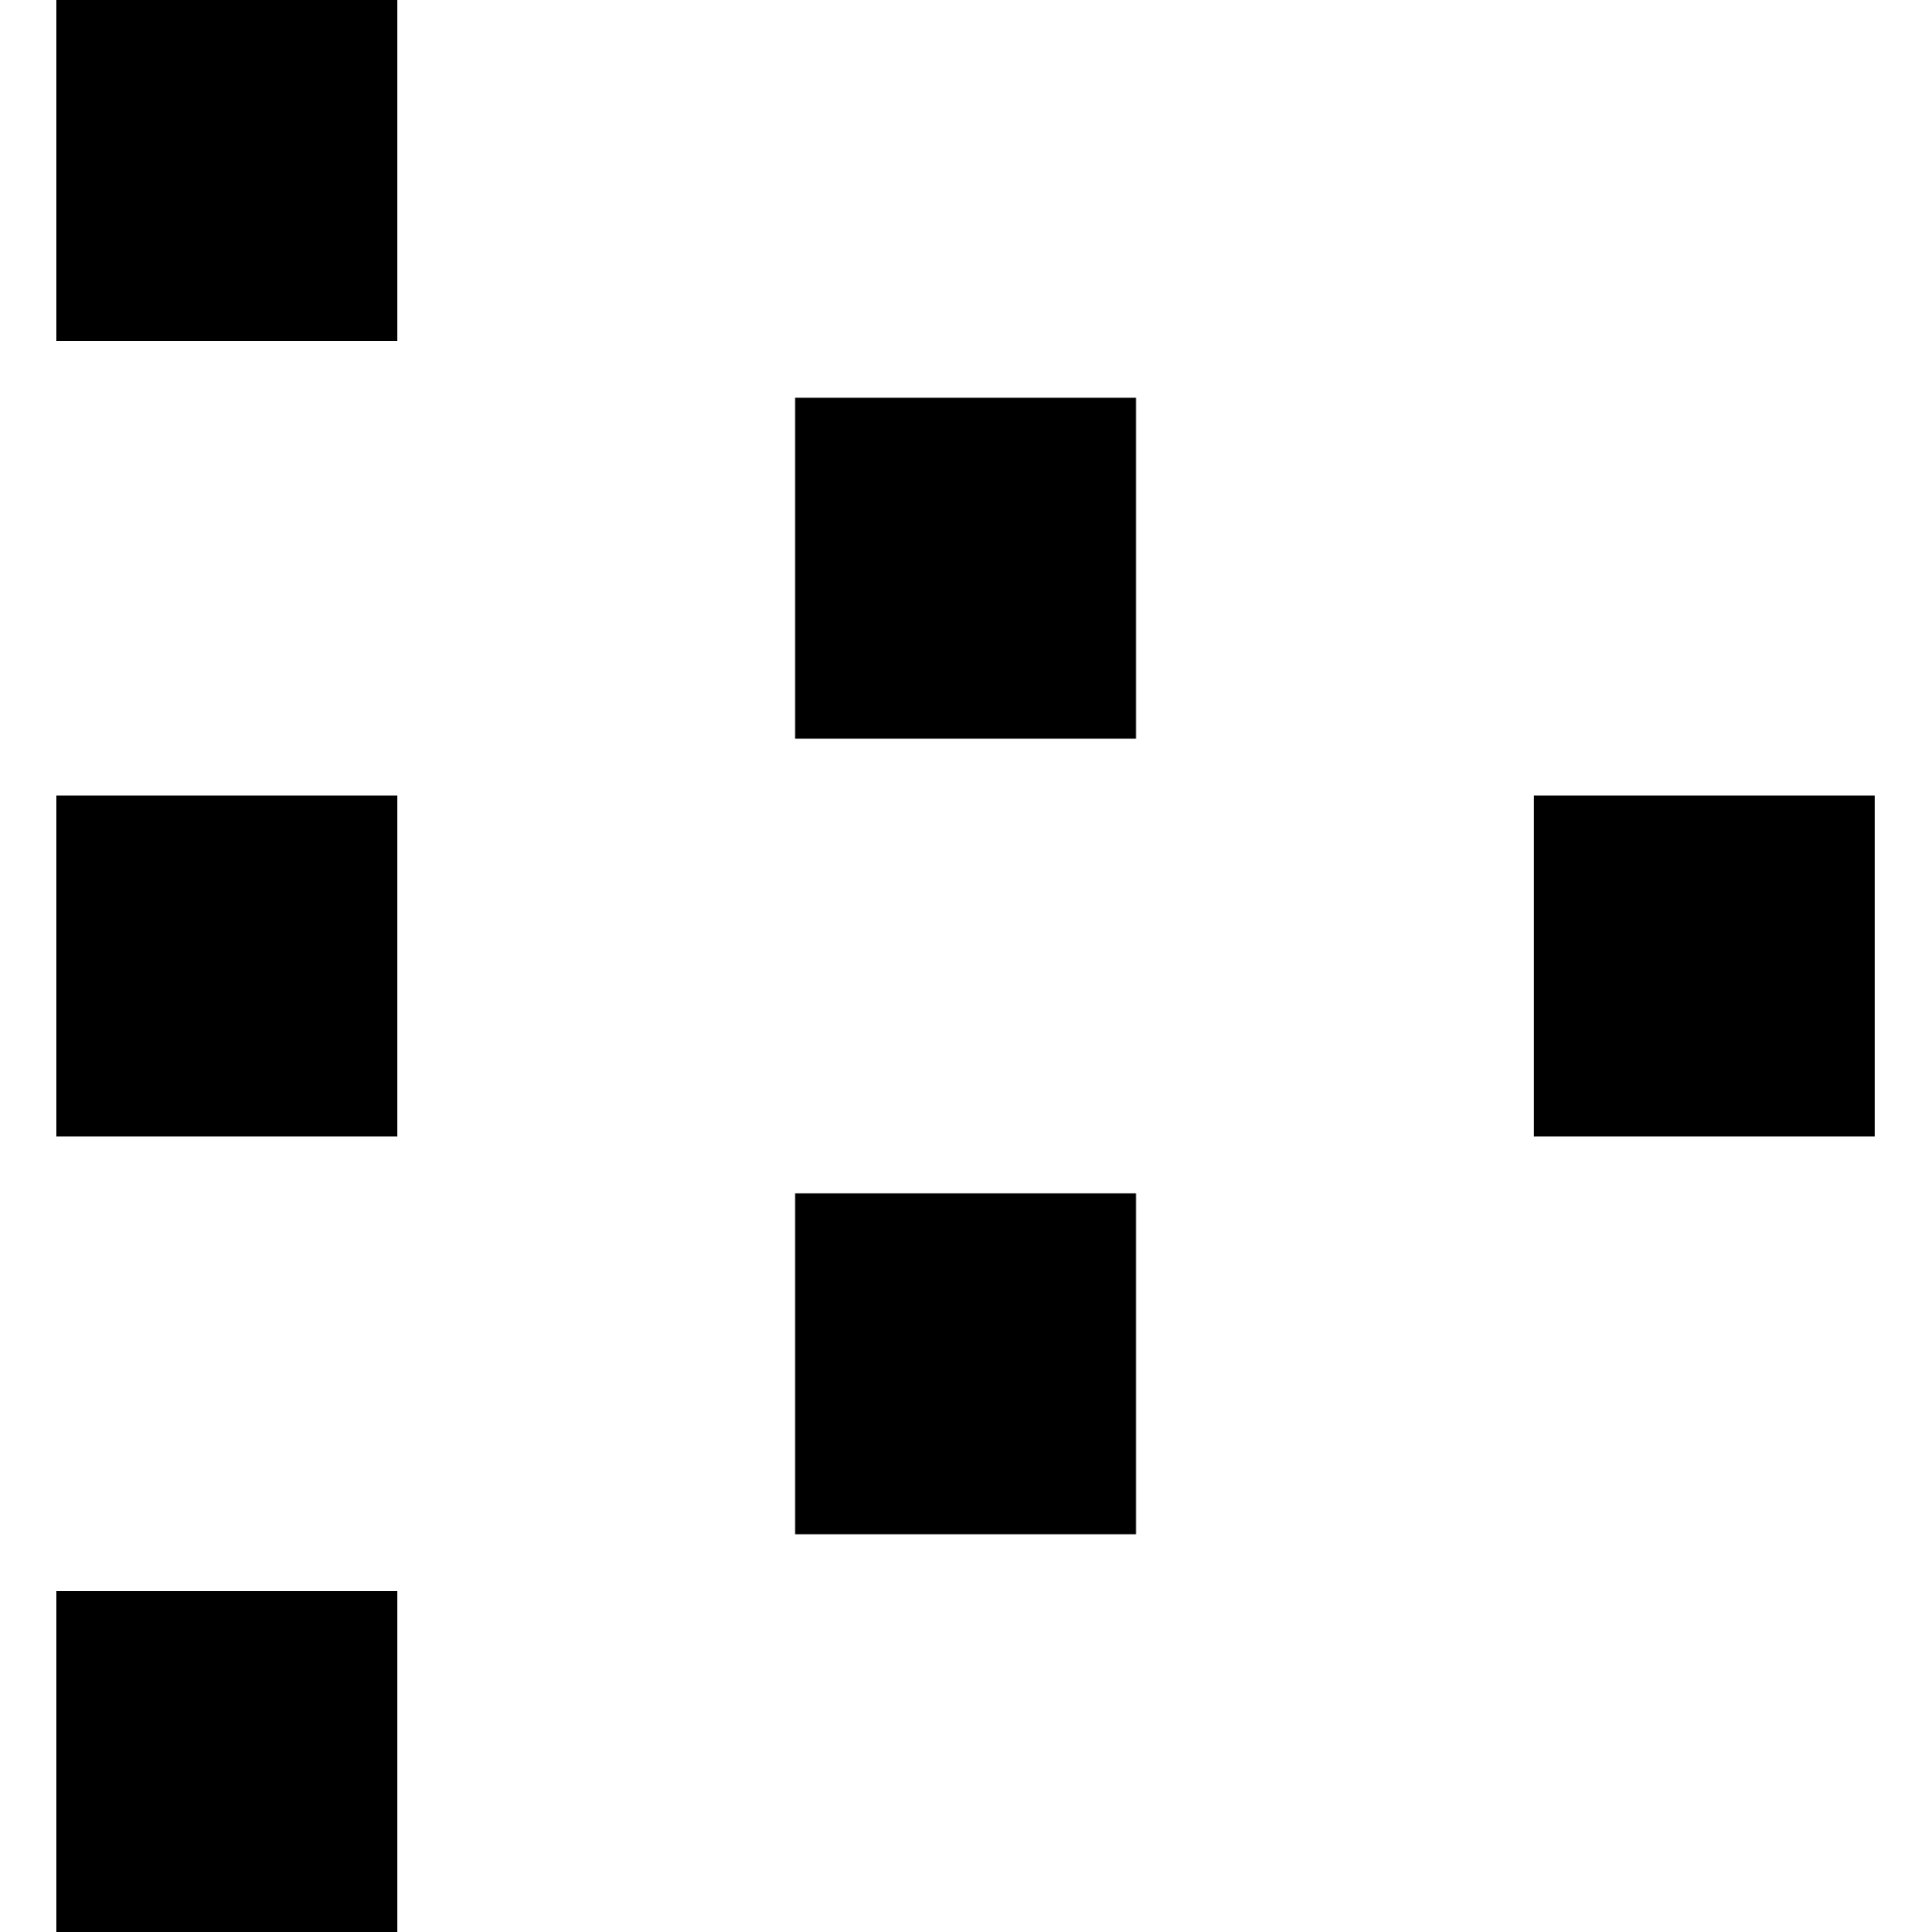 Livepeer logo in png format